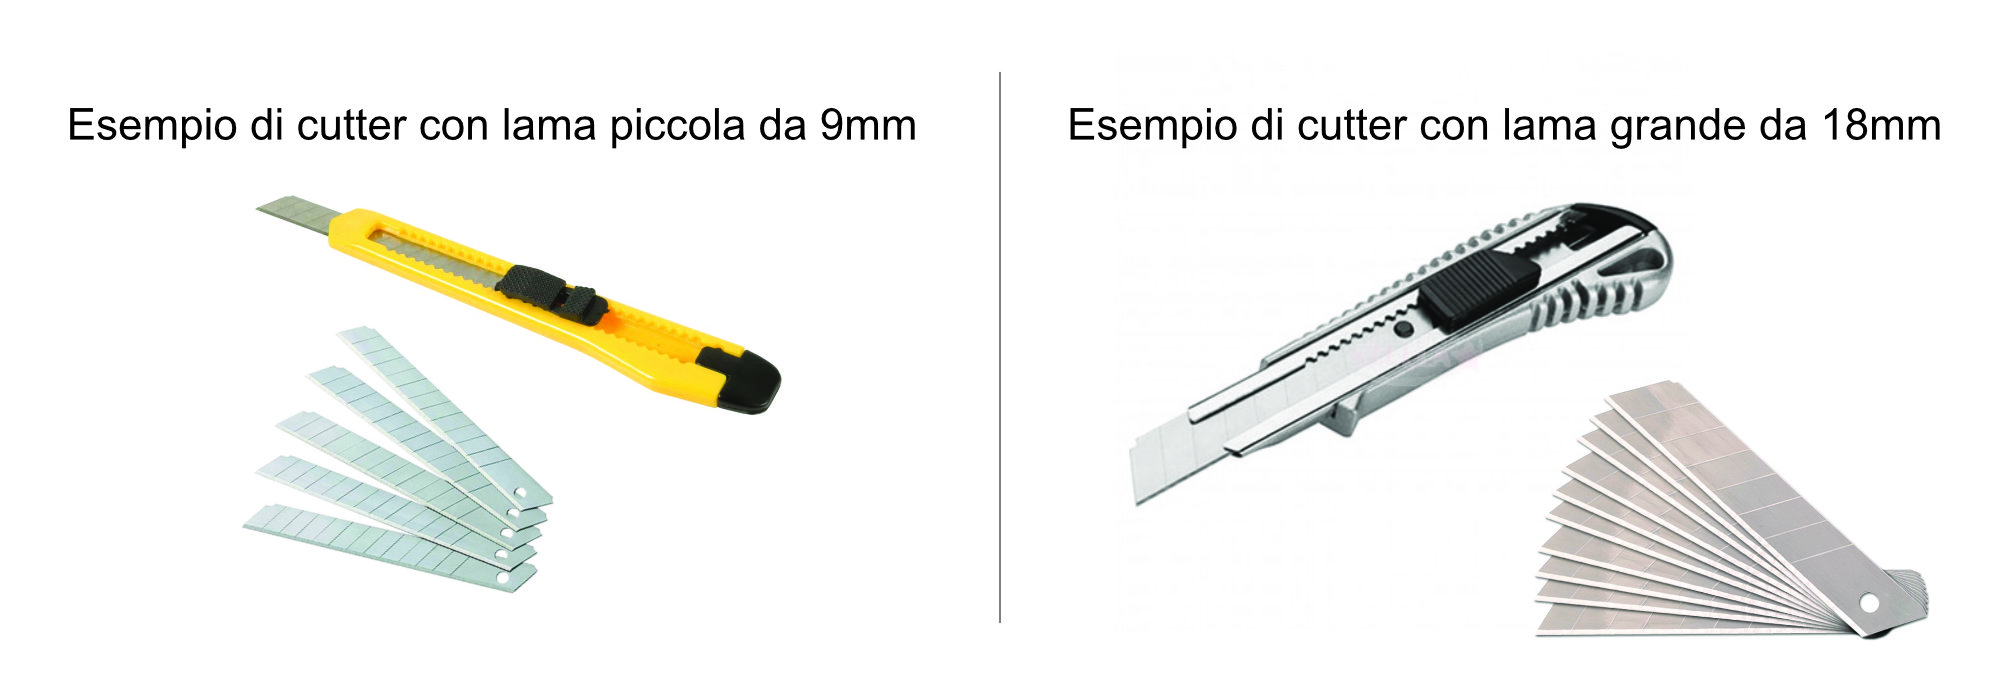 Lame per taglierino altezza 9mm - ricambio per cutter Piccoli (10pz)